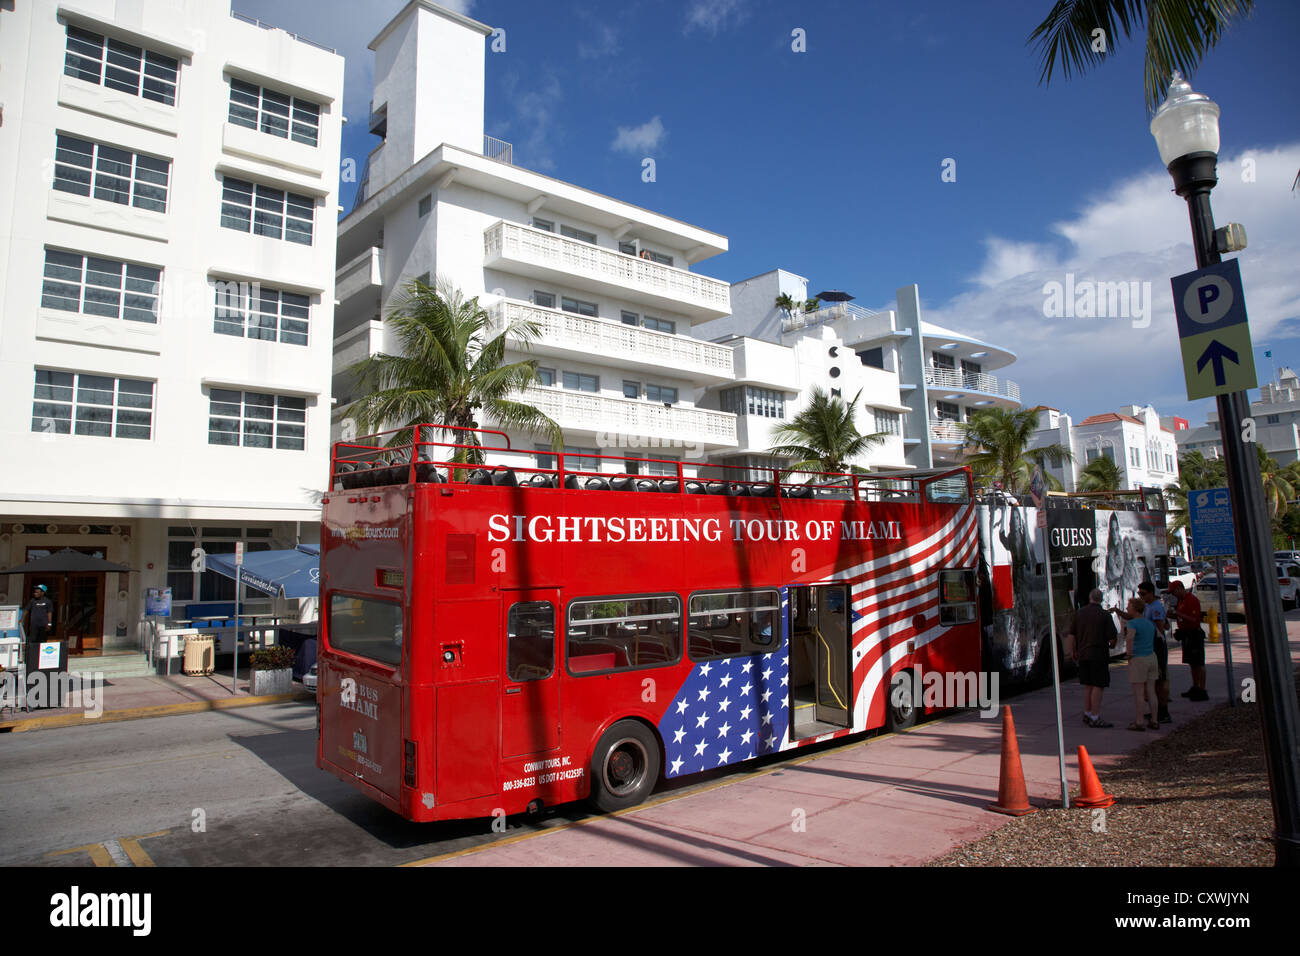 La visite guidée en bus à double étage Miami South beach floride usa Banque D'Images